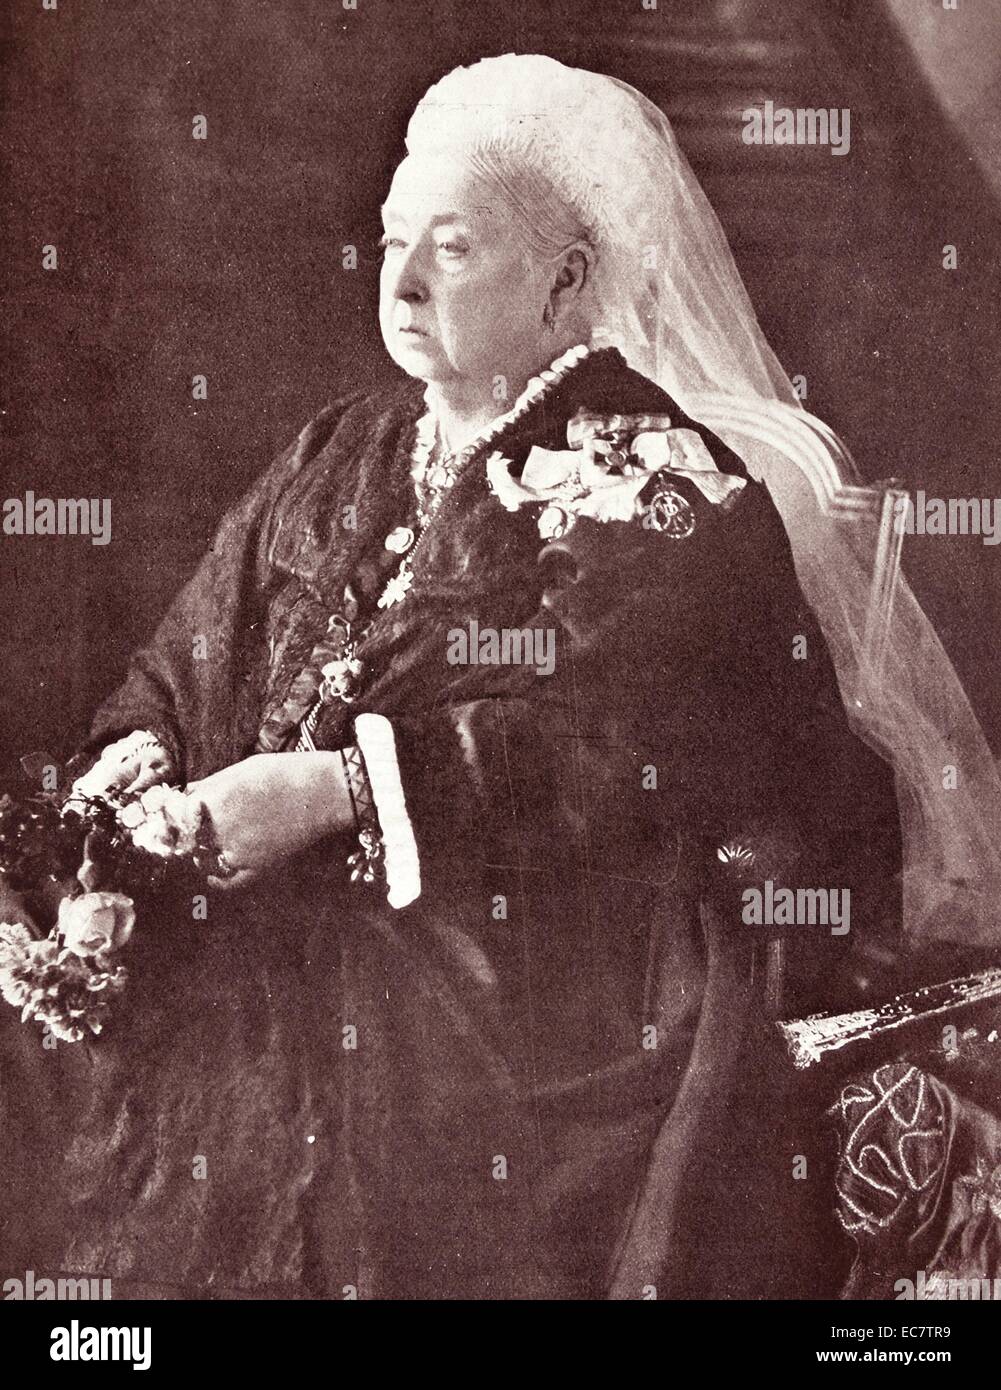 Königin Victoria von Großbritannien 1899. Victoria (Alexandrina Victoria; 24. Mai 1819 - 22. Januar 1901) Der Monarch des Vereinigten Königreichs von Großbritannien und Irland wurde ab dem 20. Juni 1837 bis zu ihrem Tod. Vom 1. Mai 1876, die sie pflegte, die zusätzlichen Titel der Kaiserin von Indien Stockfoto